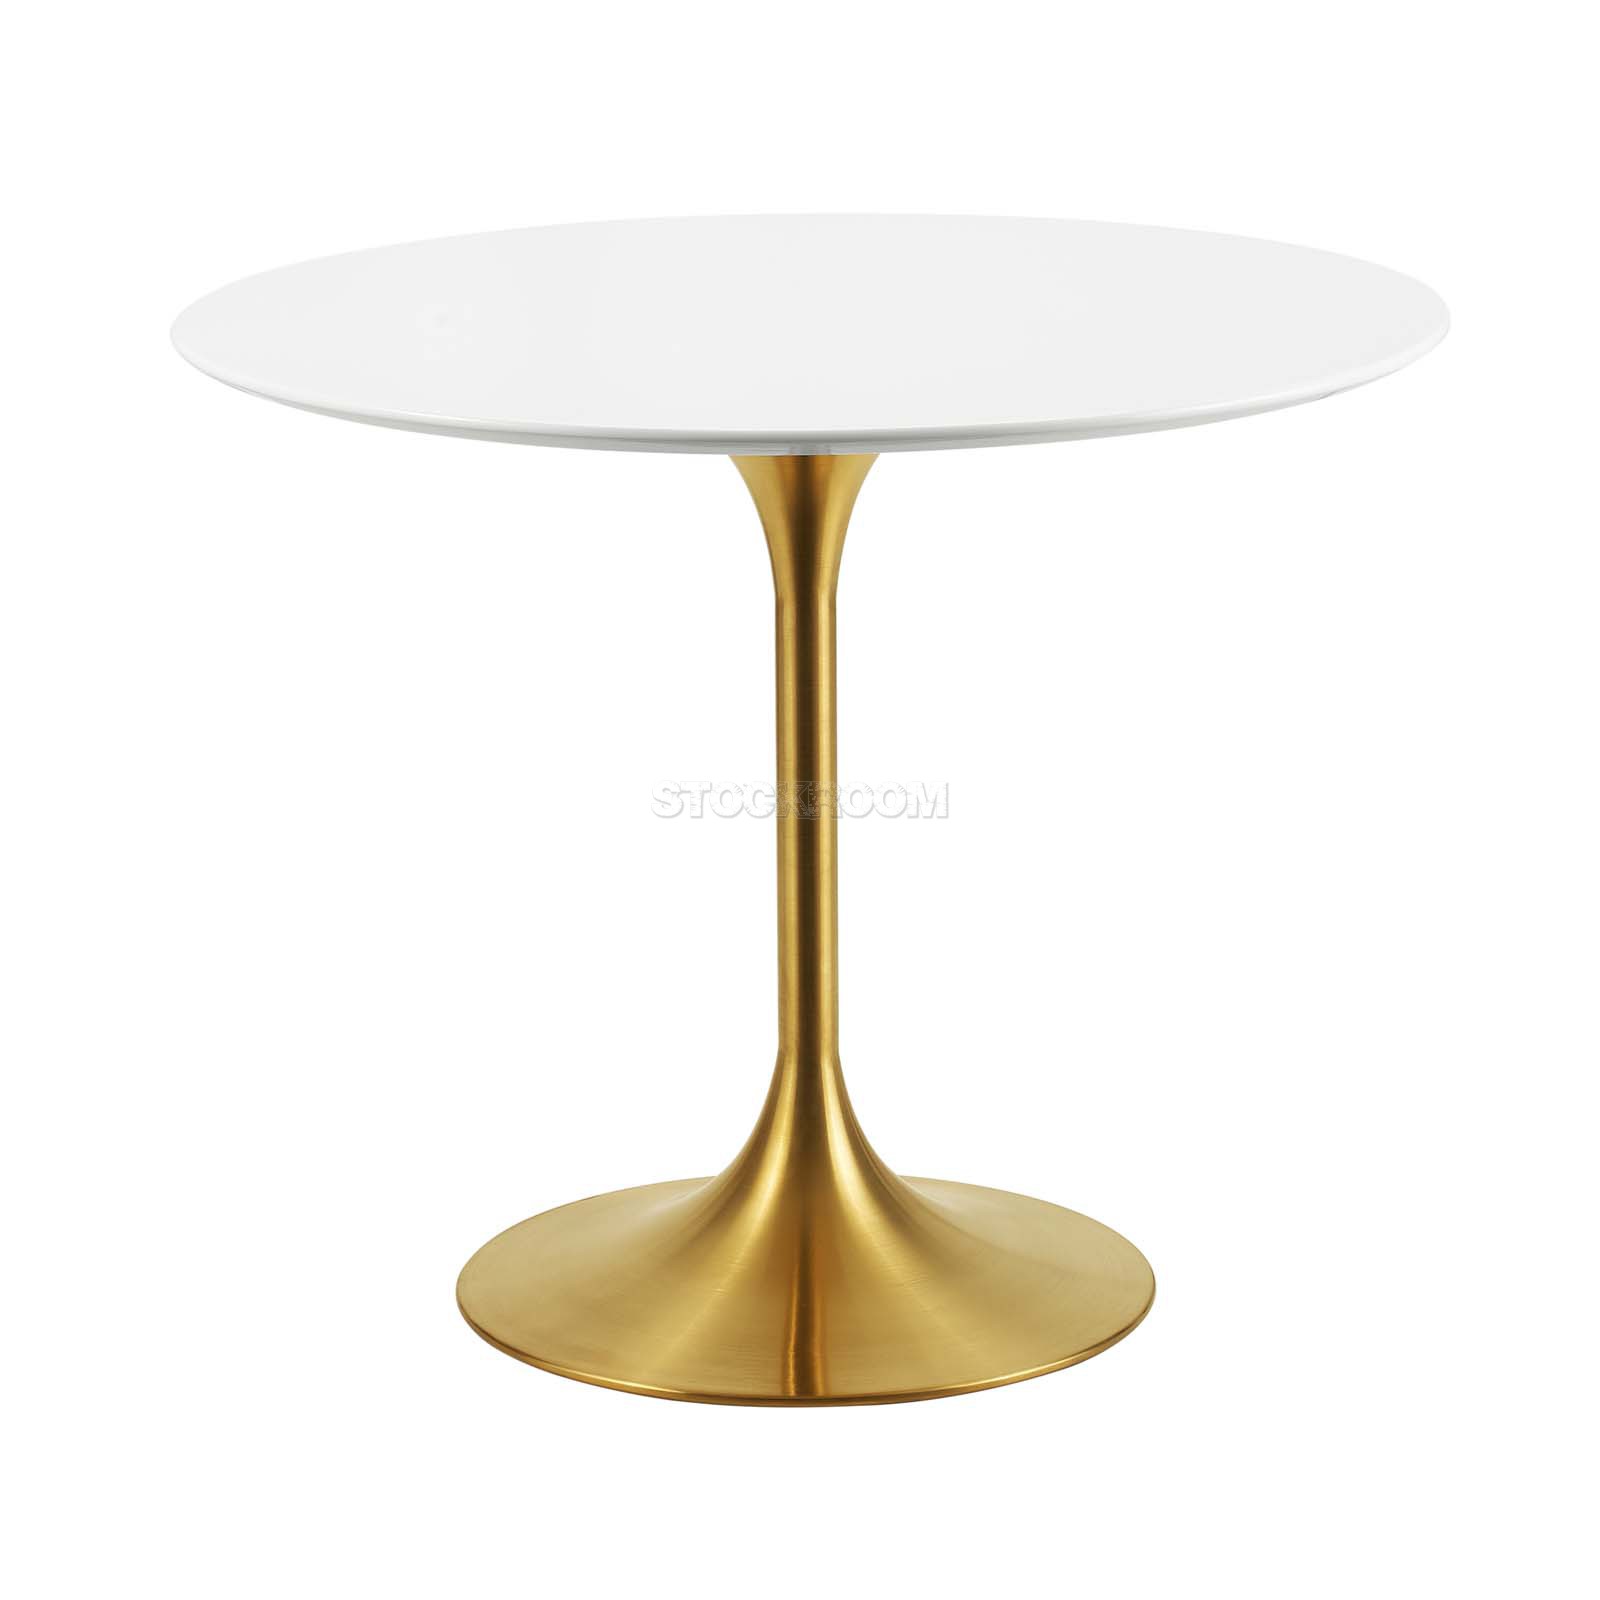 Eero Saarinen Tulip Style Dining Table With Brass Base